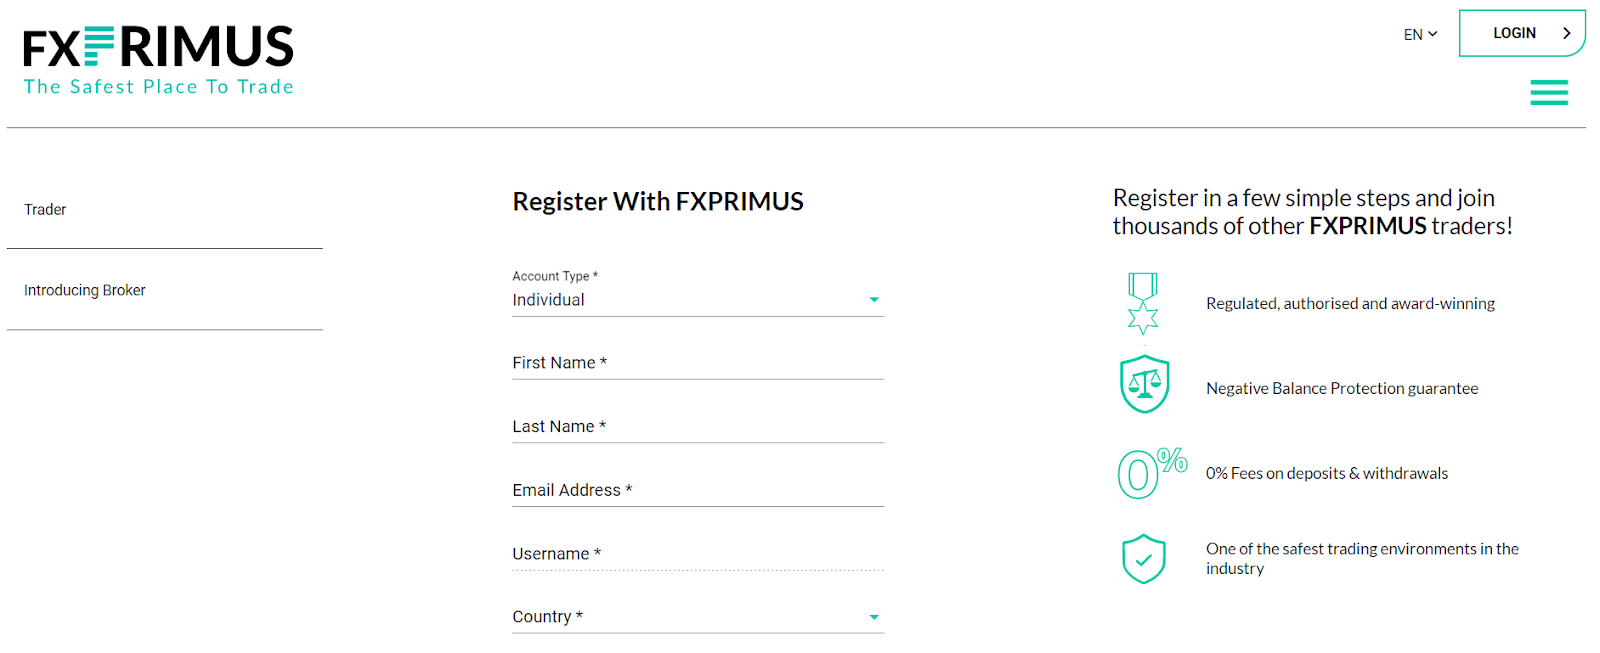 التسجيل على موقع FXPrimus الإلكتروني